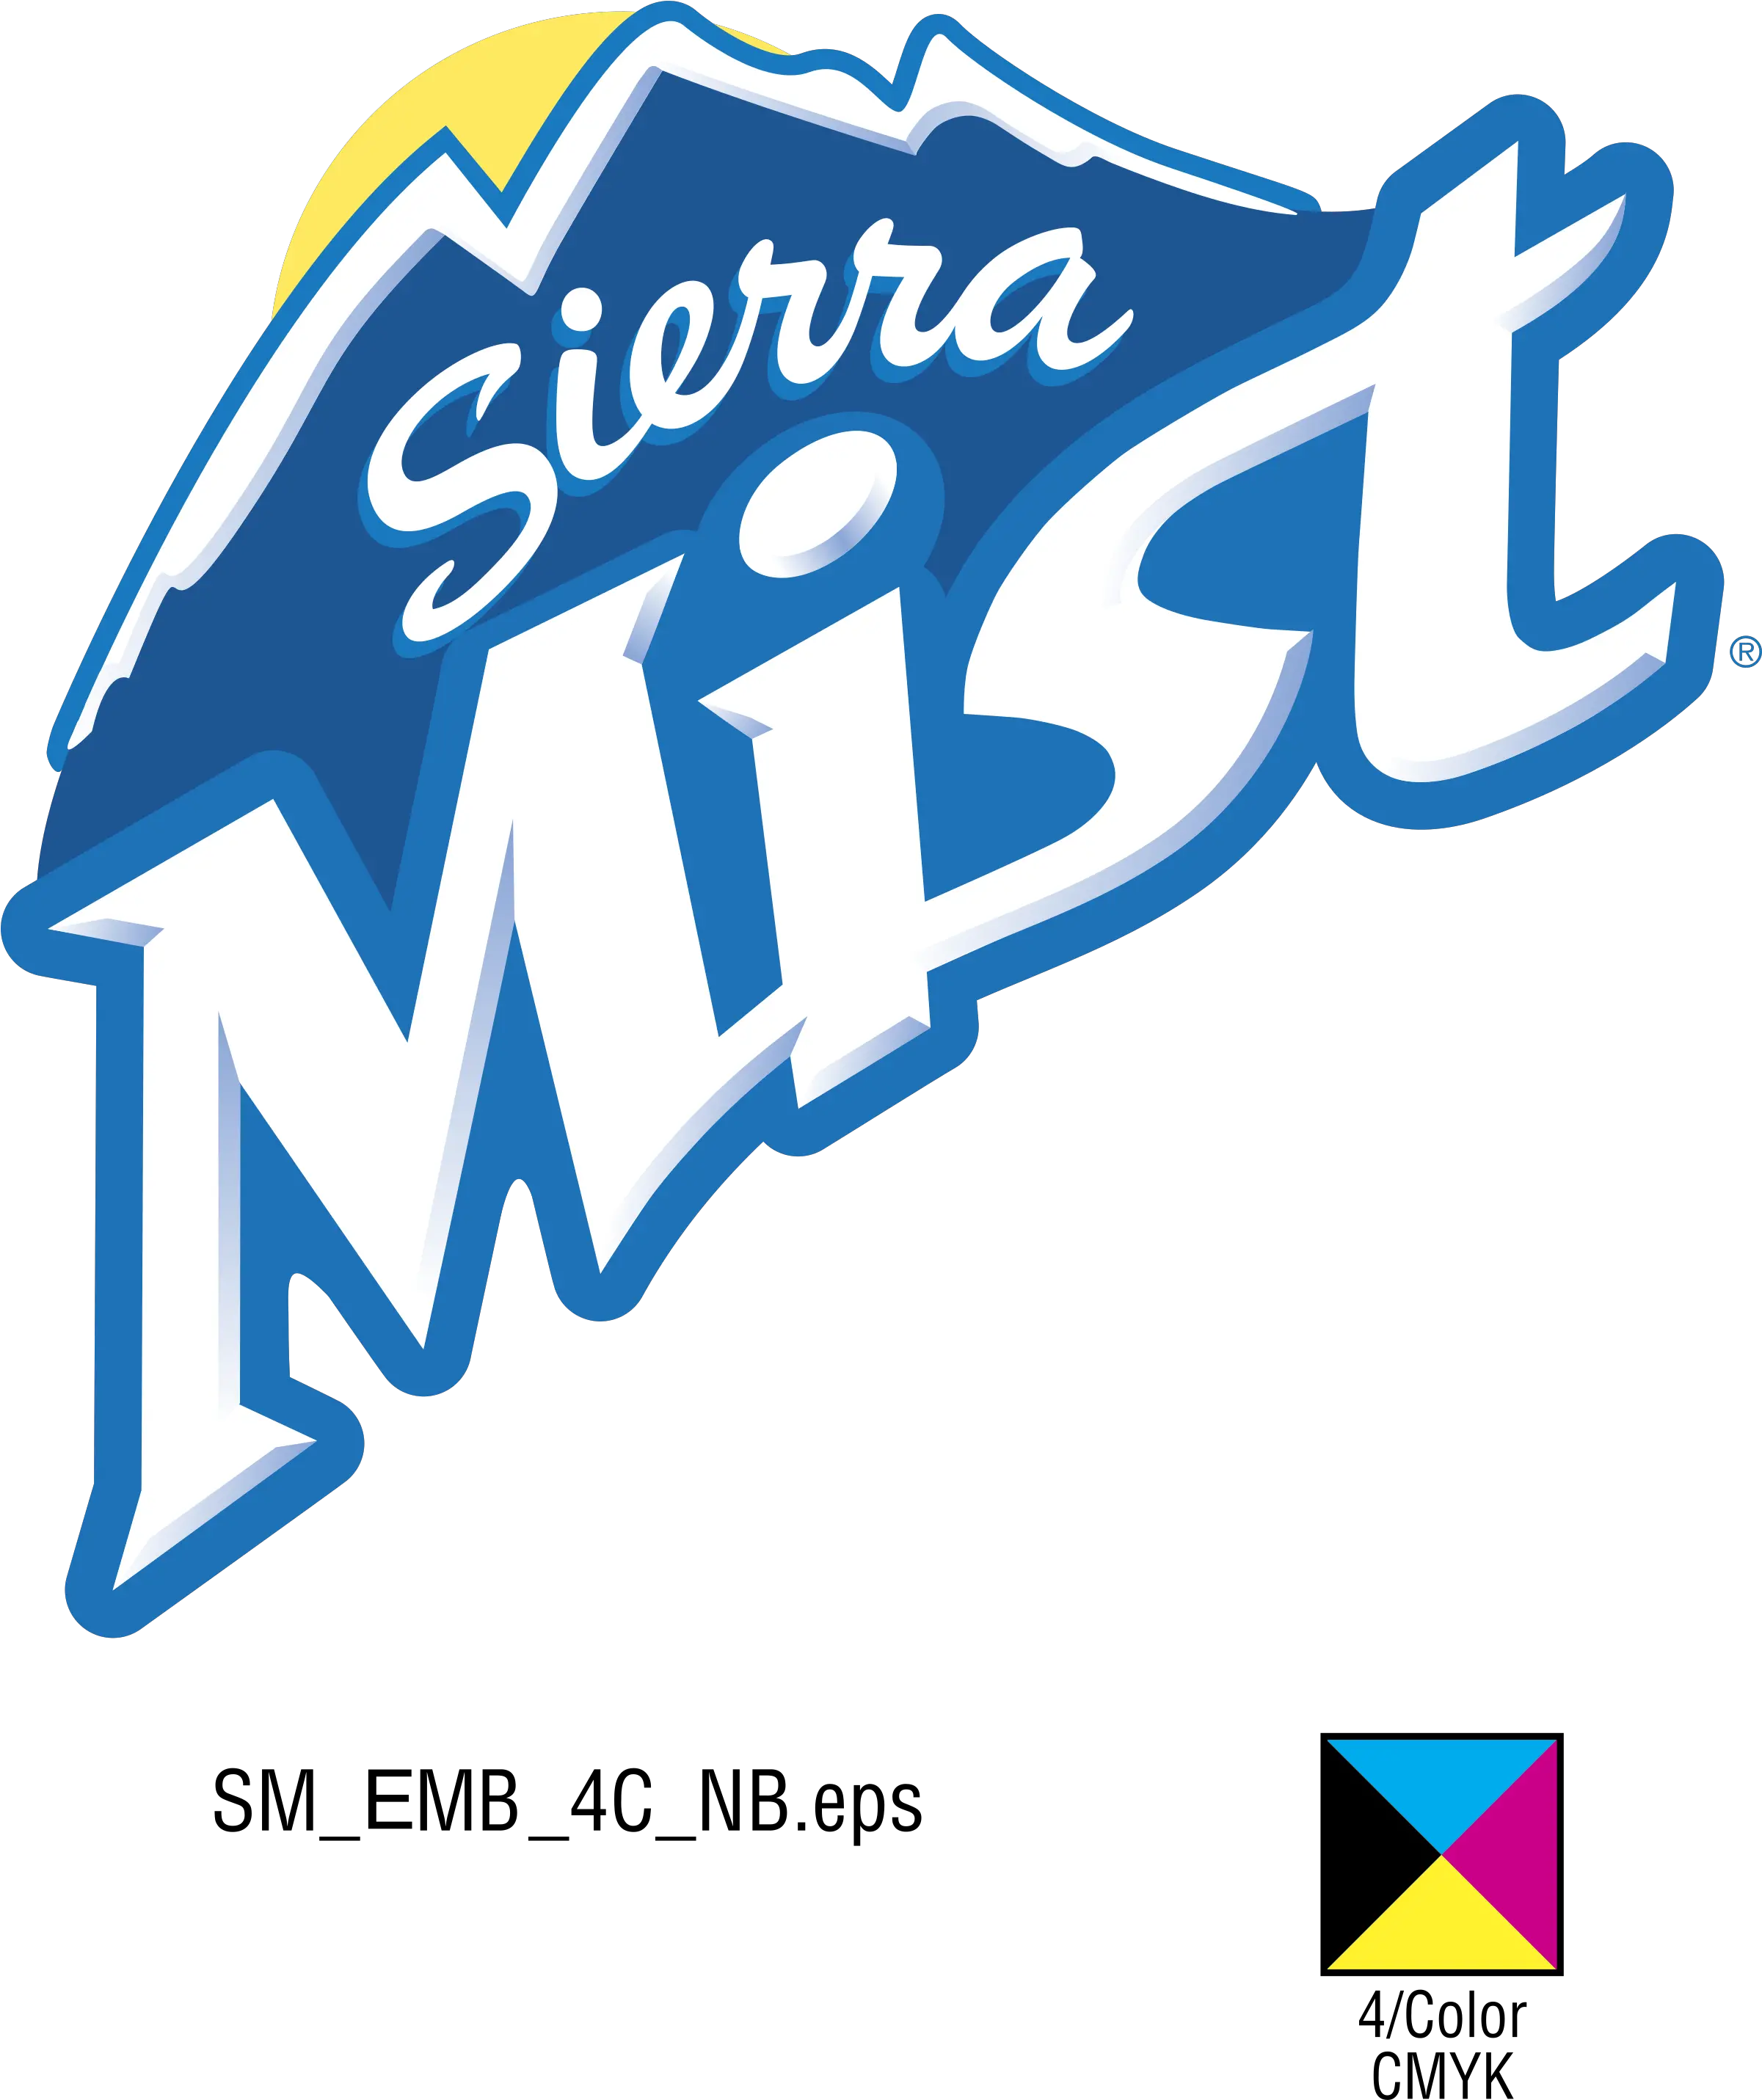 Sierra Mist Logo Png Transparent Background